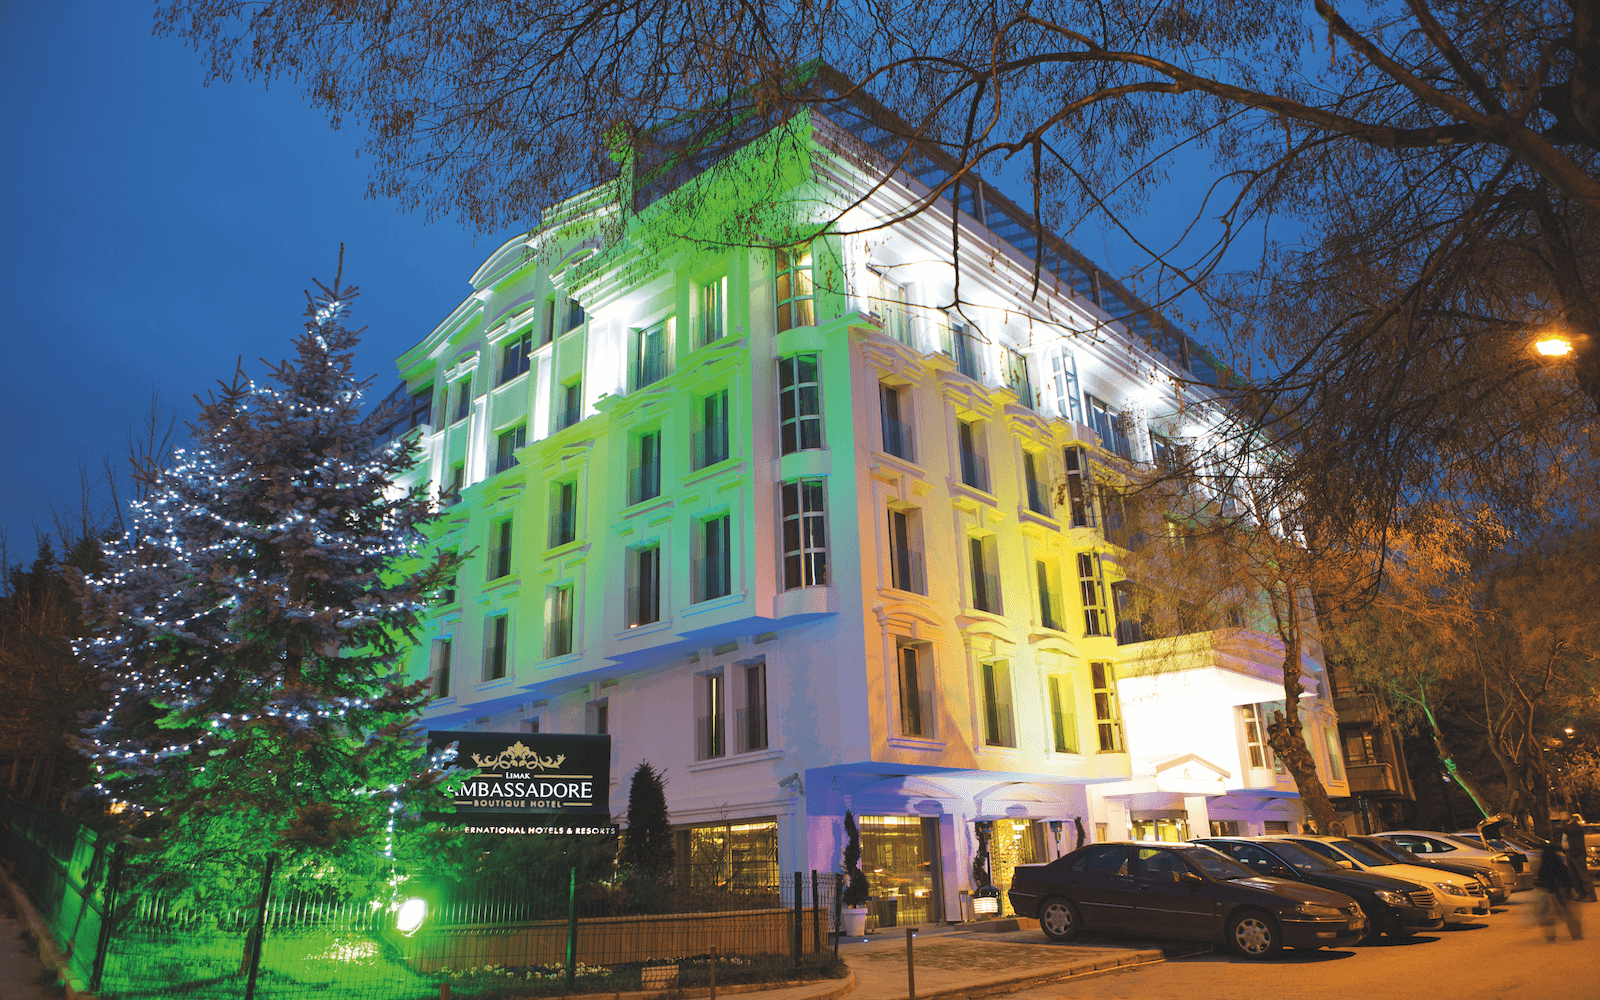 Limak Ambassadore Hotel